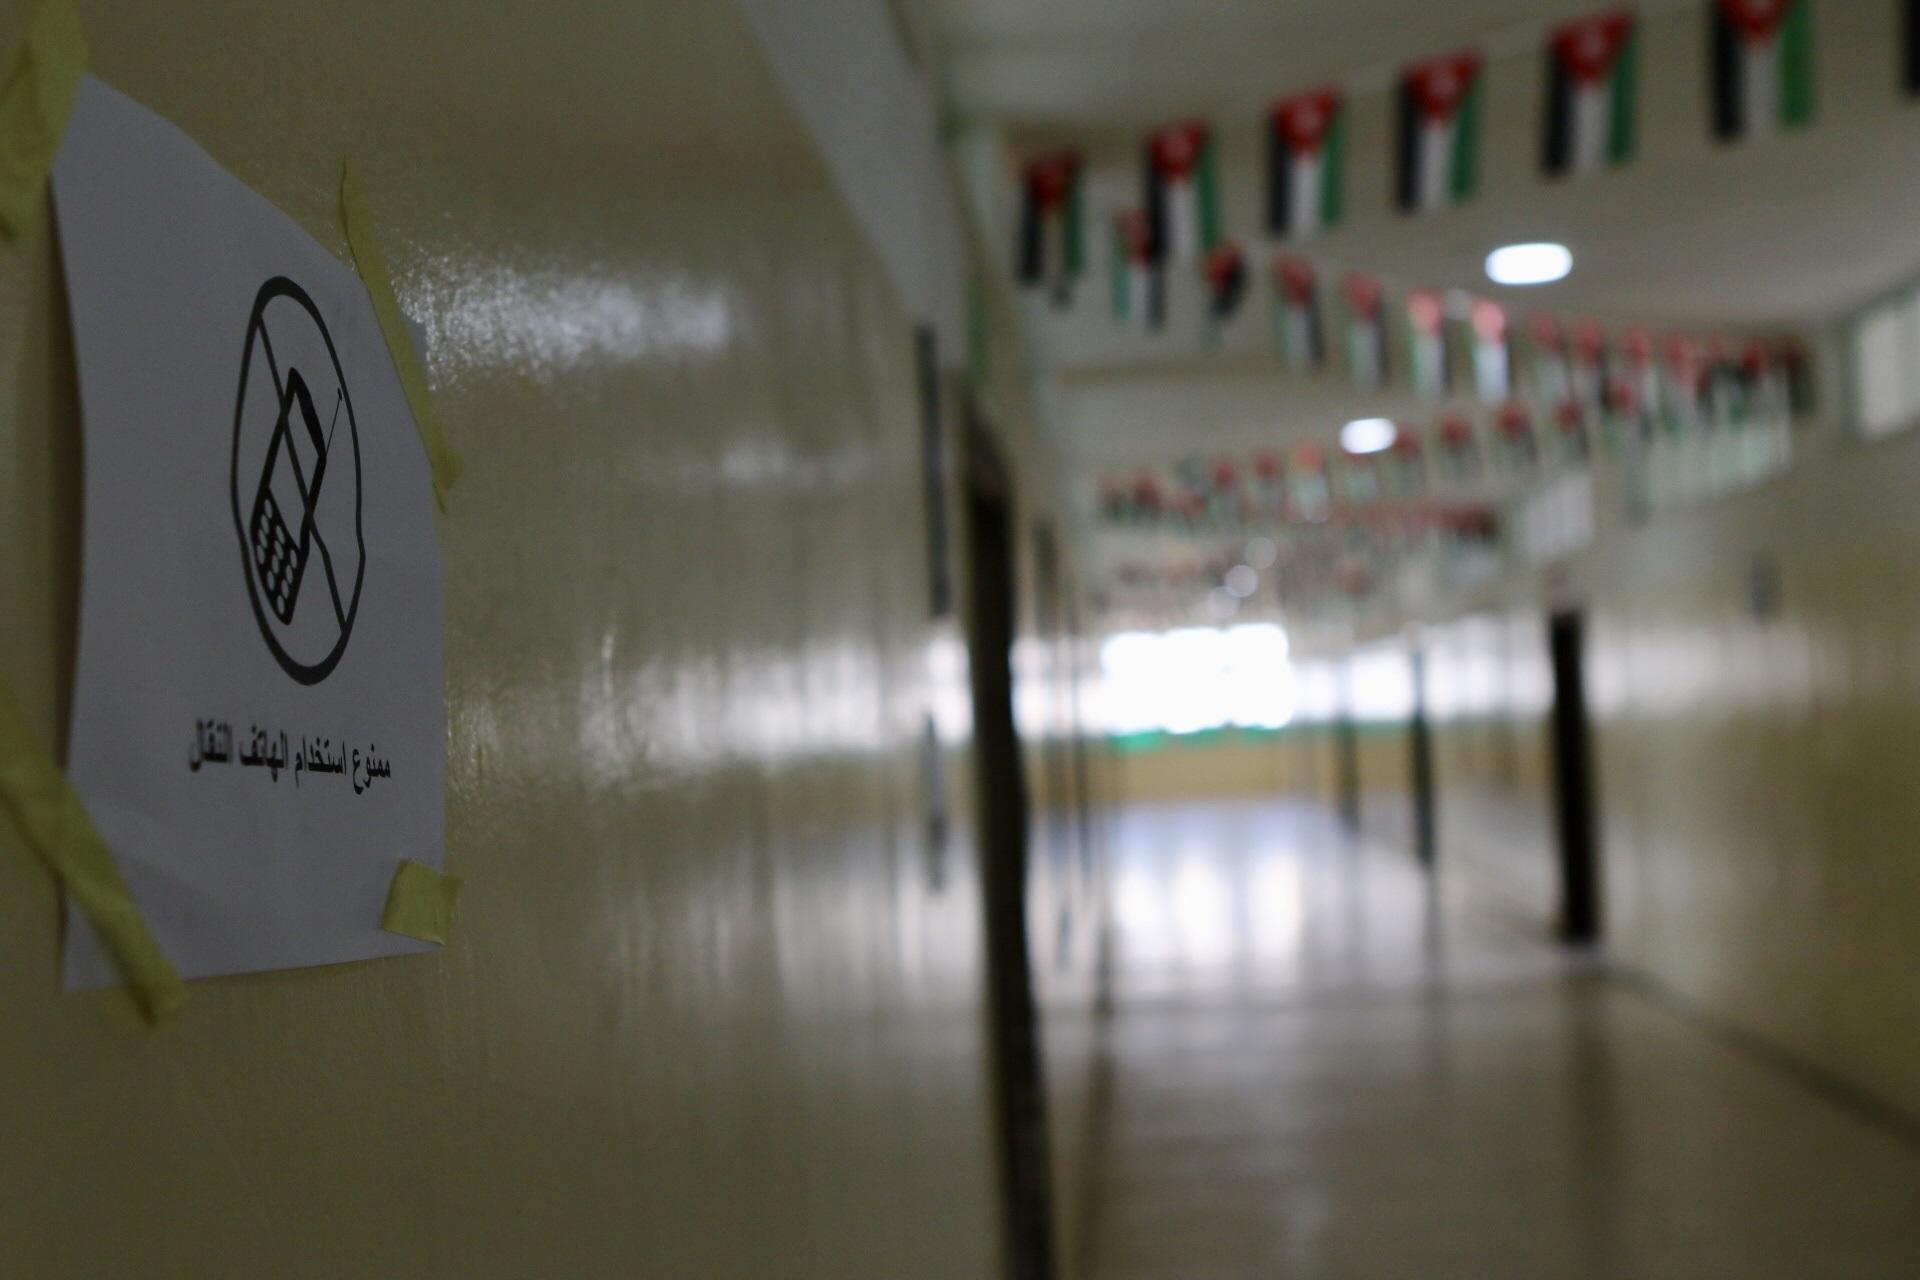  لافتة كتب عليها ممنوع استخدام الهاتف النقال في إحدى مدارس المملكة. (صلاح ملكاوي/المملكة)